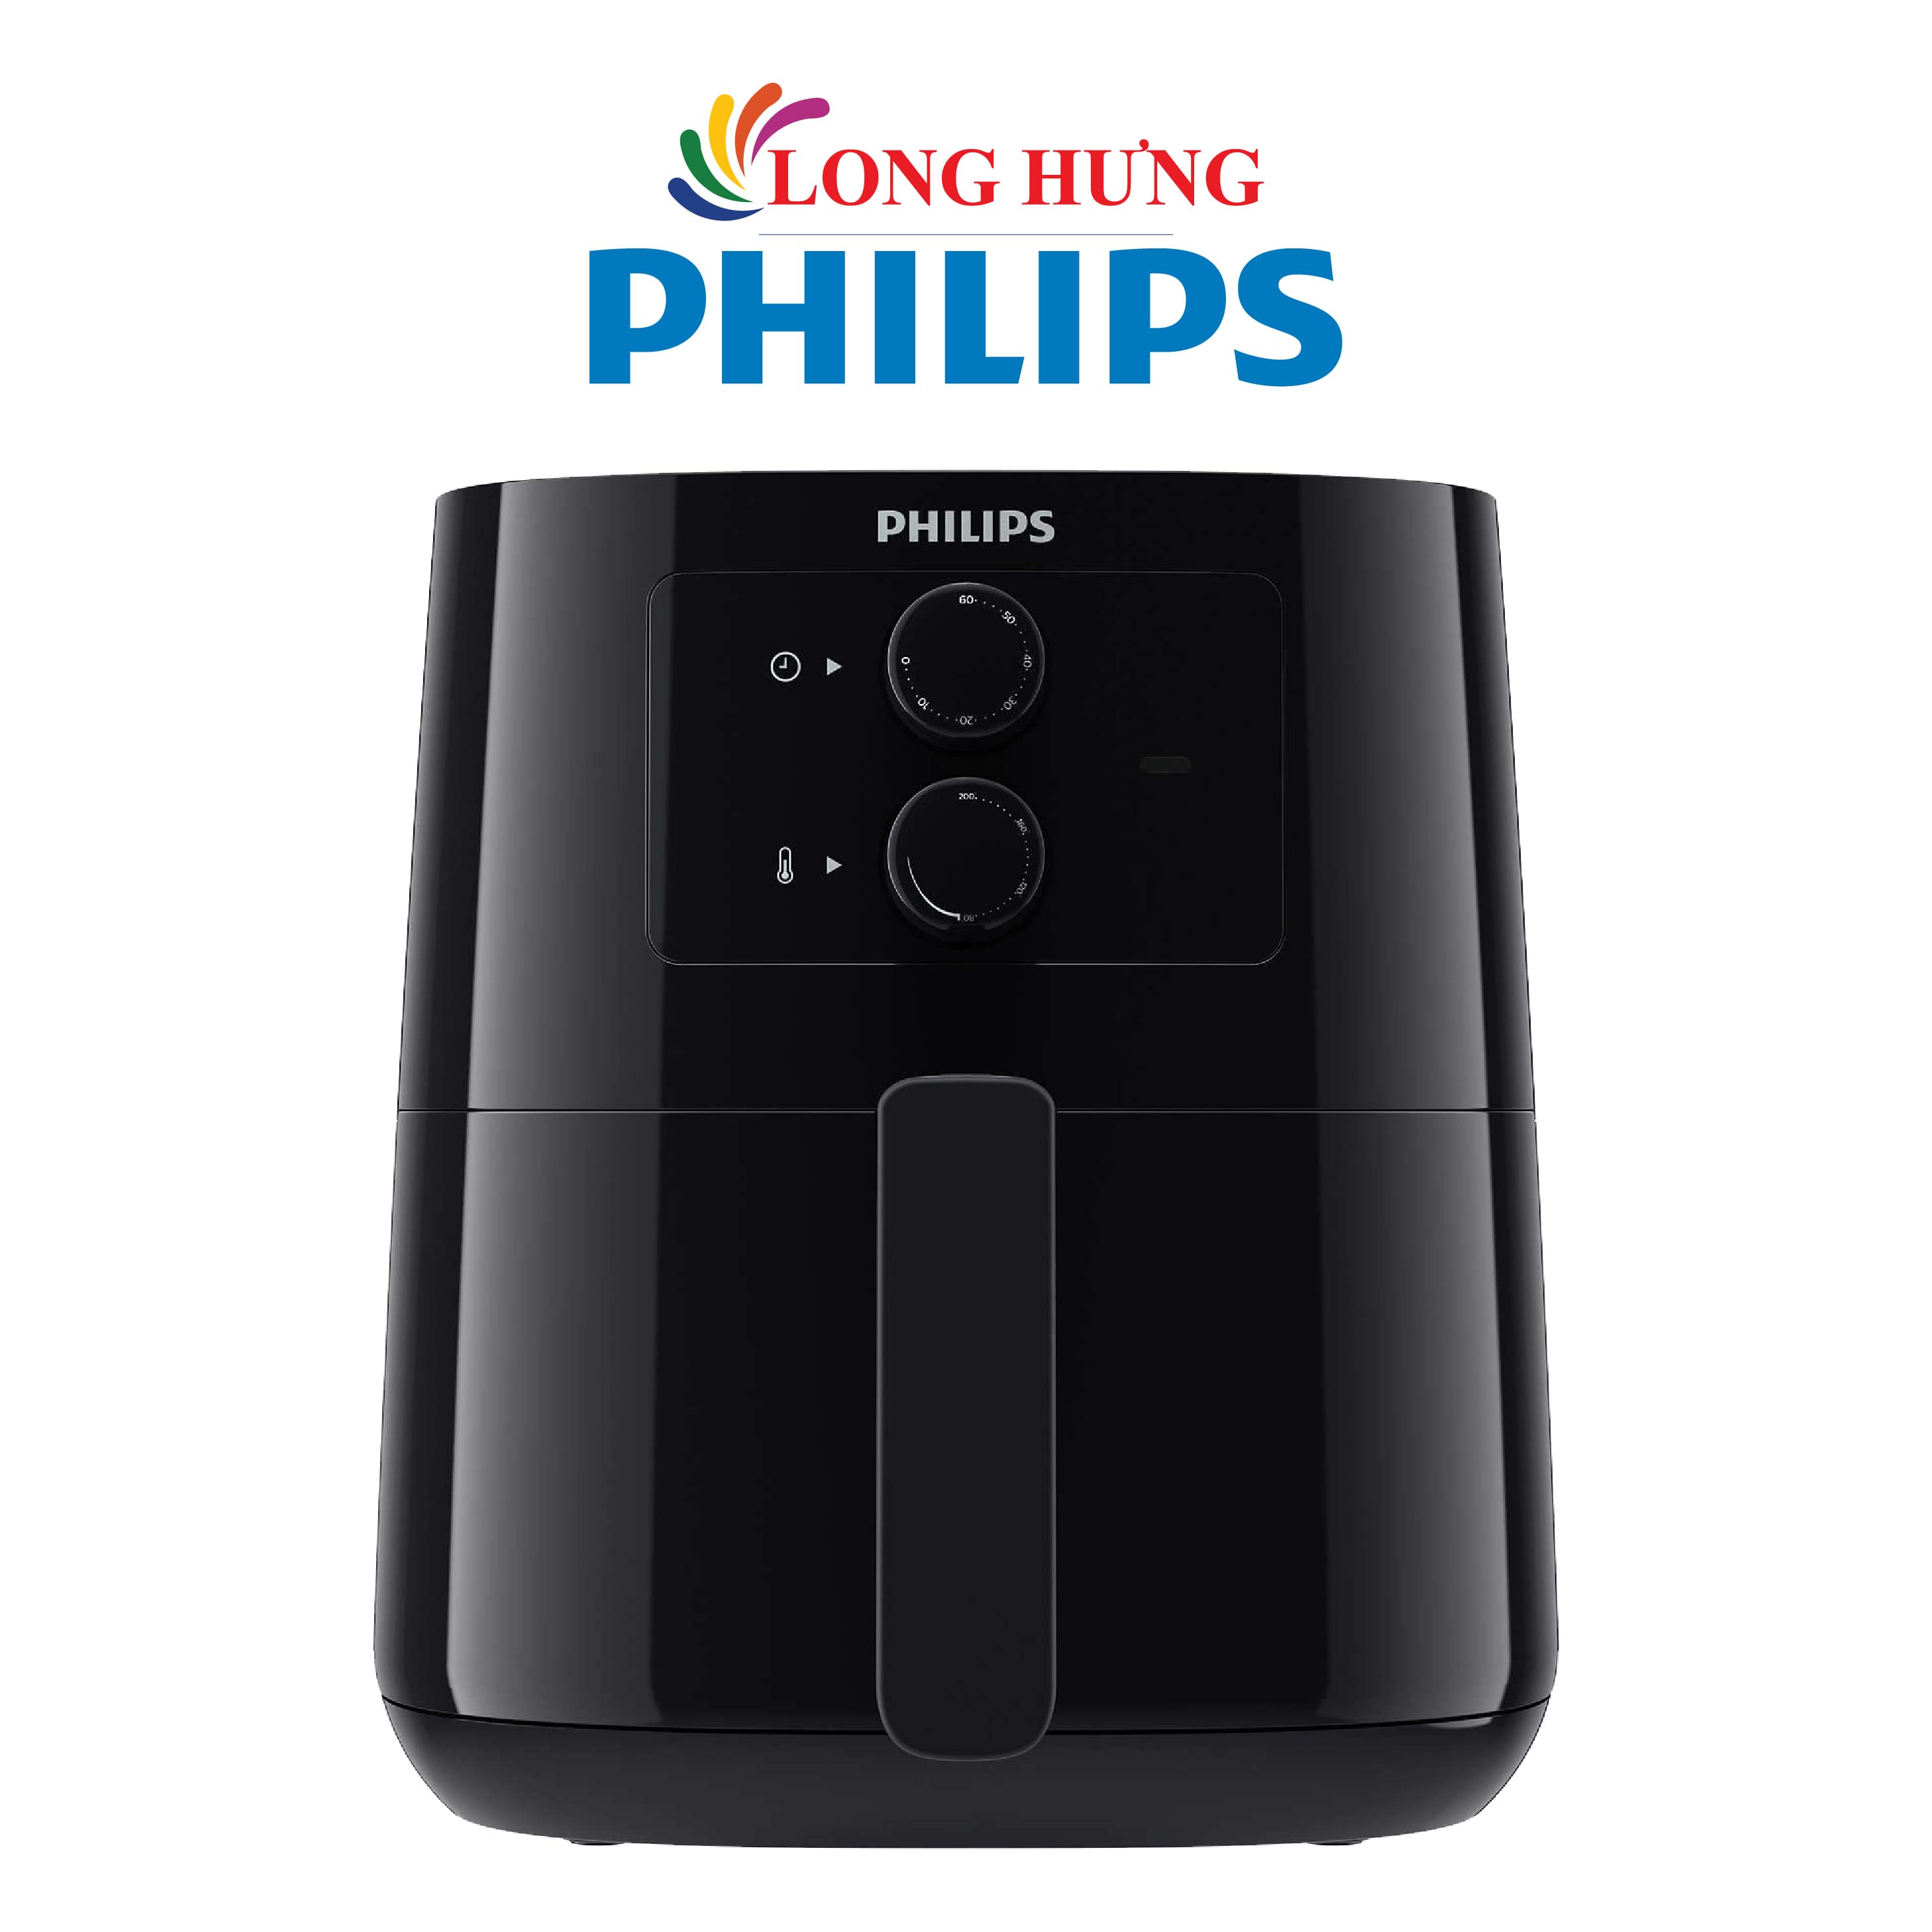 Nồi chiên không dầu điều khiển cơ Philips 4.1 lít HD9200/90 - Hàng chính hãng